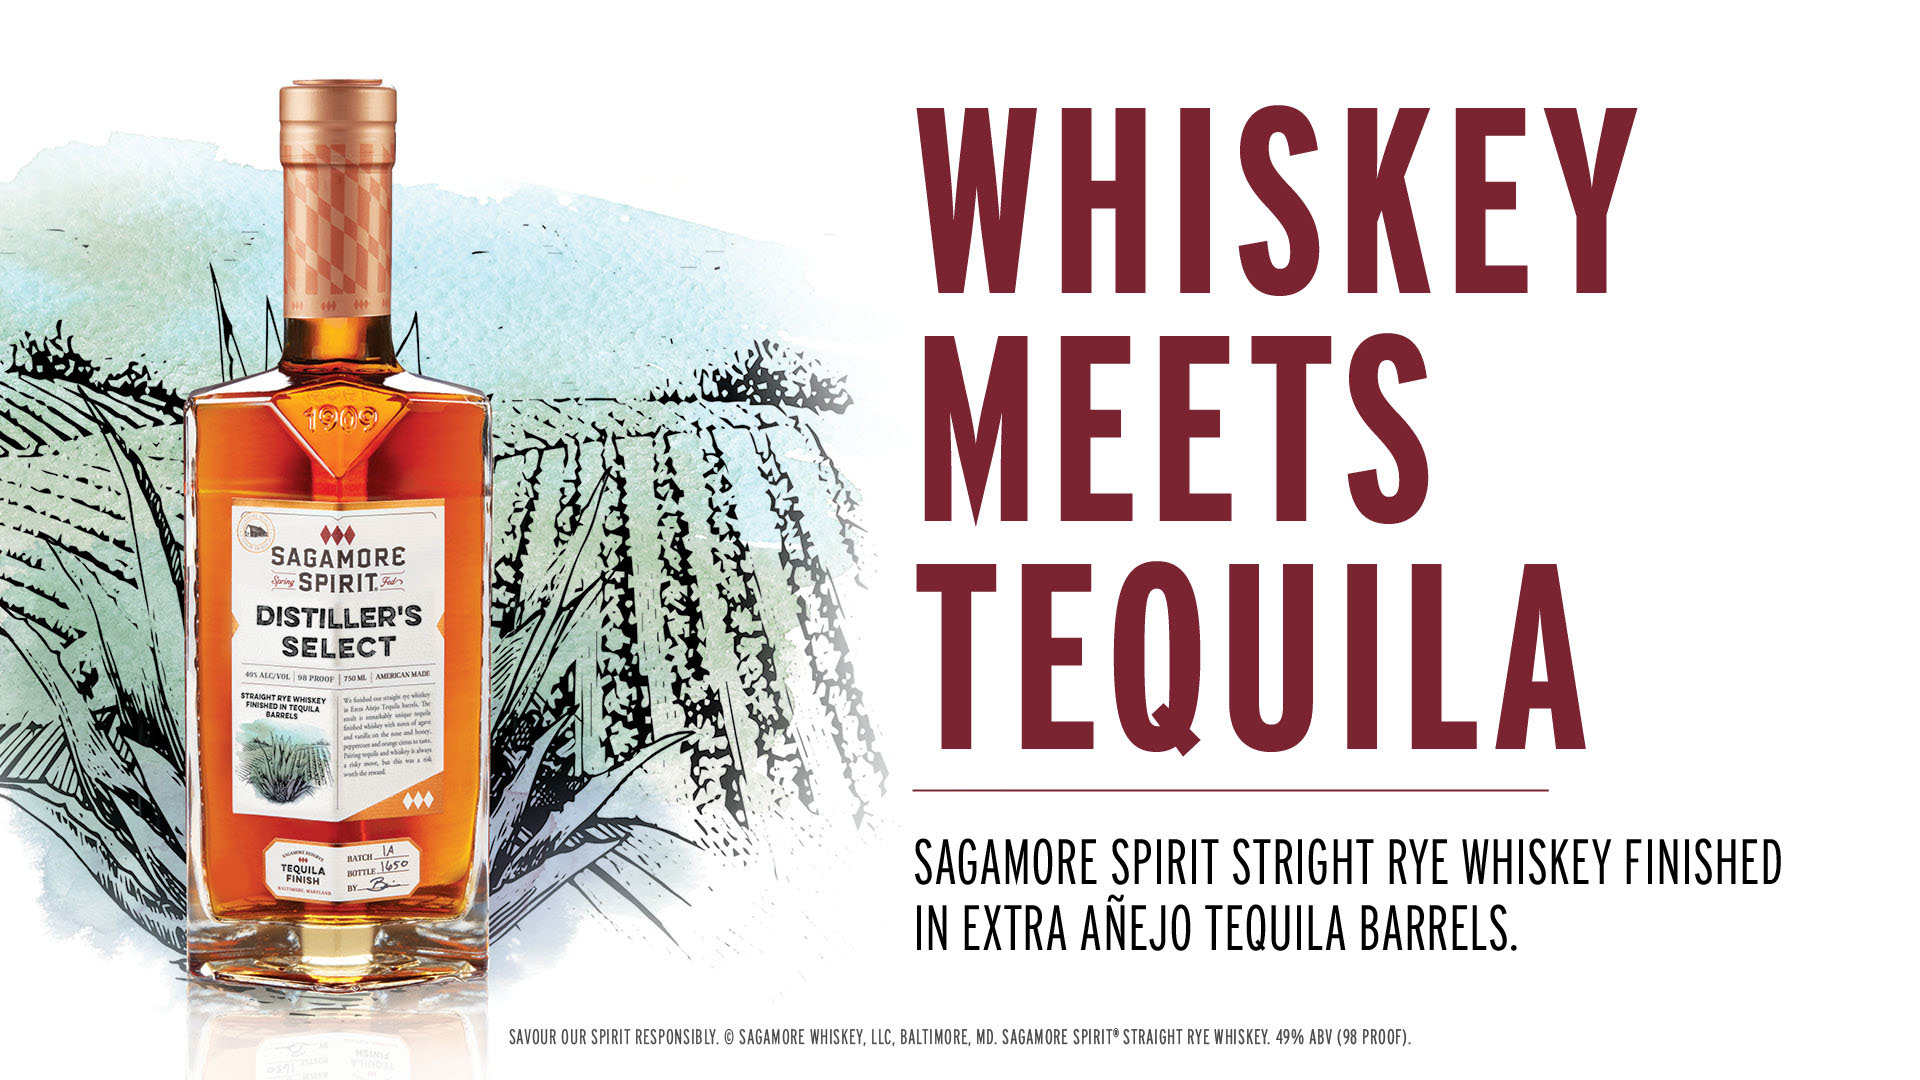 Sagamore Spirit Straight Rye Whiskey in Extra Añejo barrels